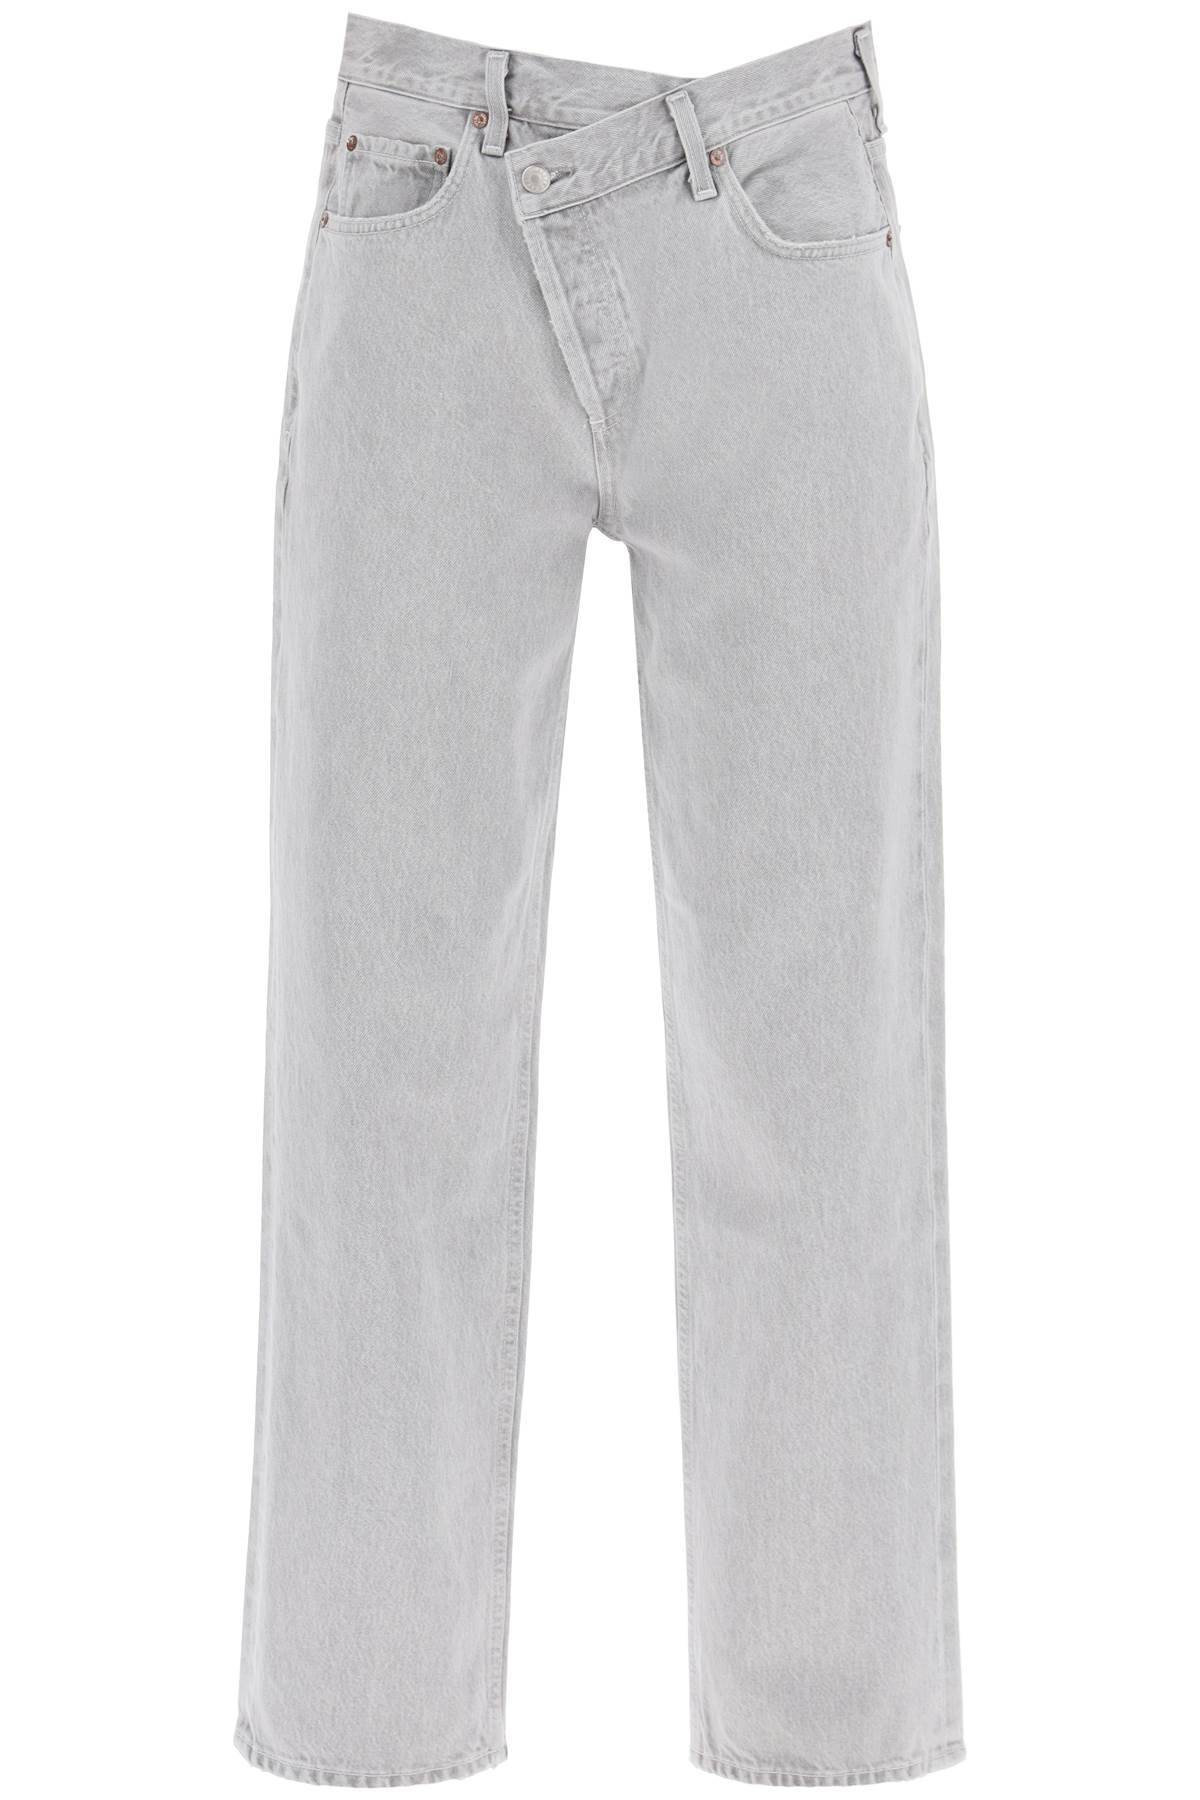 Shop Agolde Criss Cross Jeans In Grey